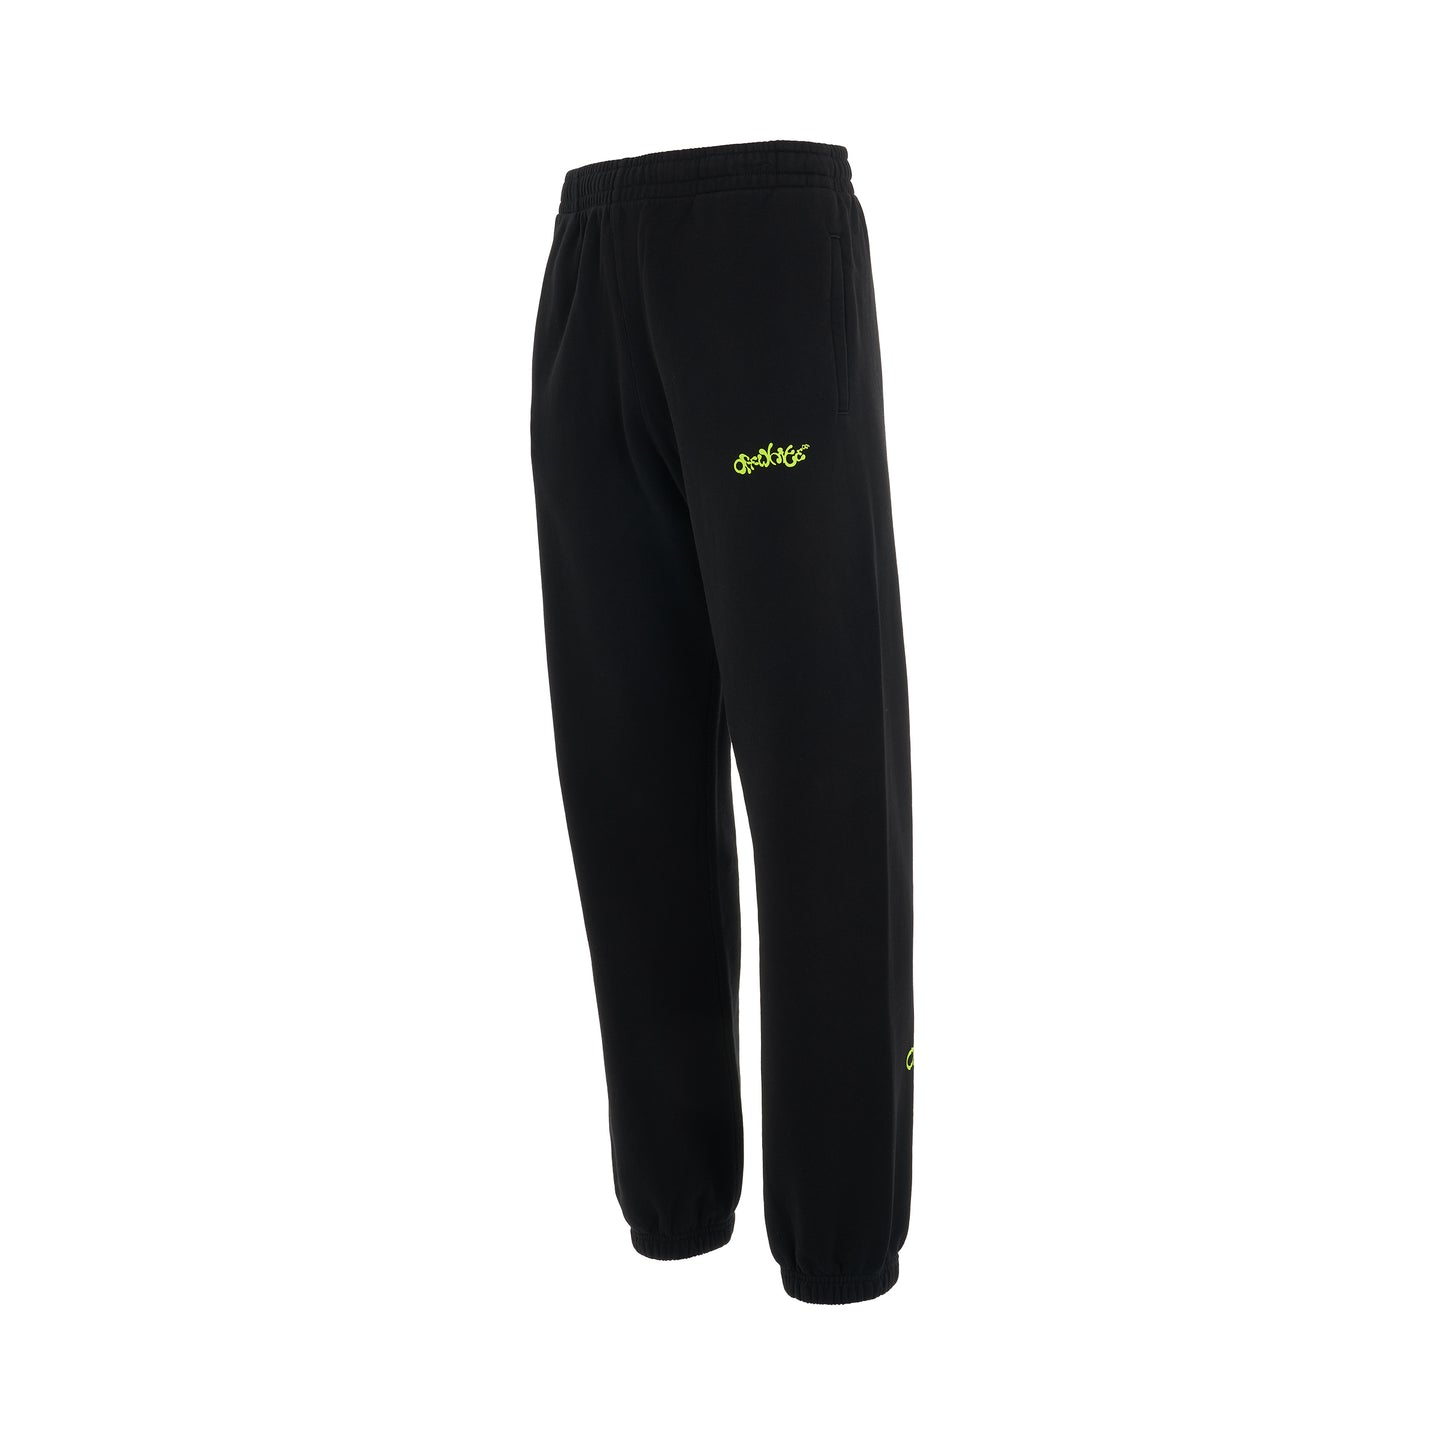 Opposite Arrow Slim Sweatpants in Black/Lime